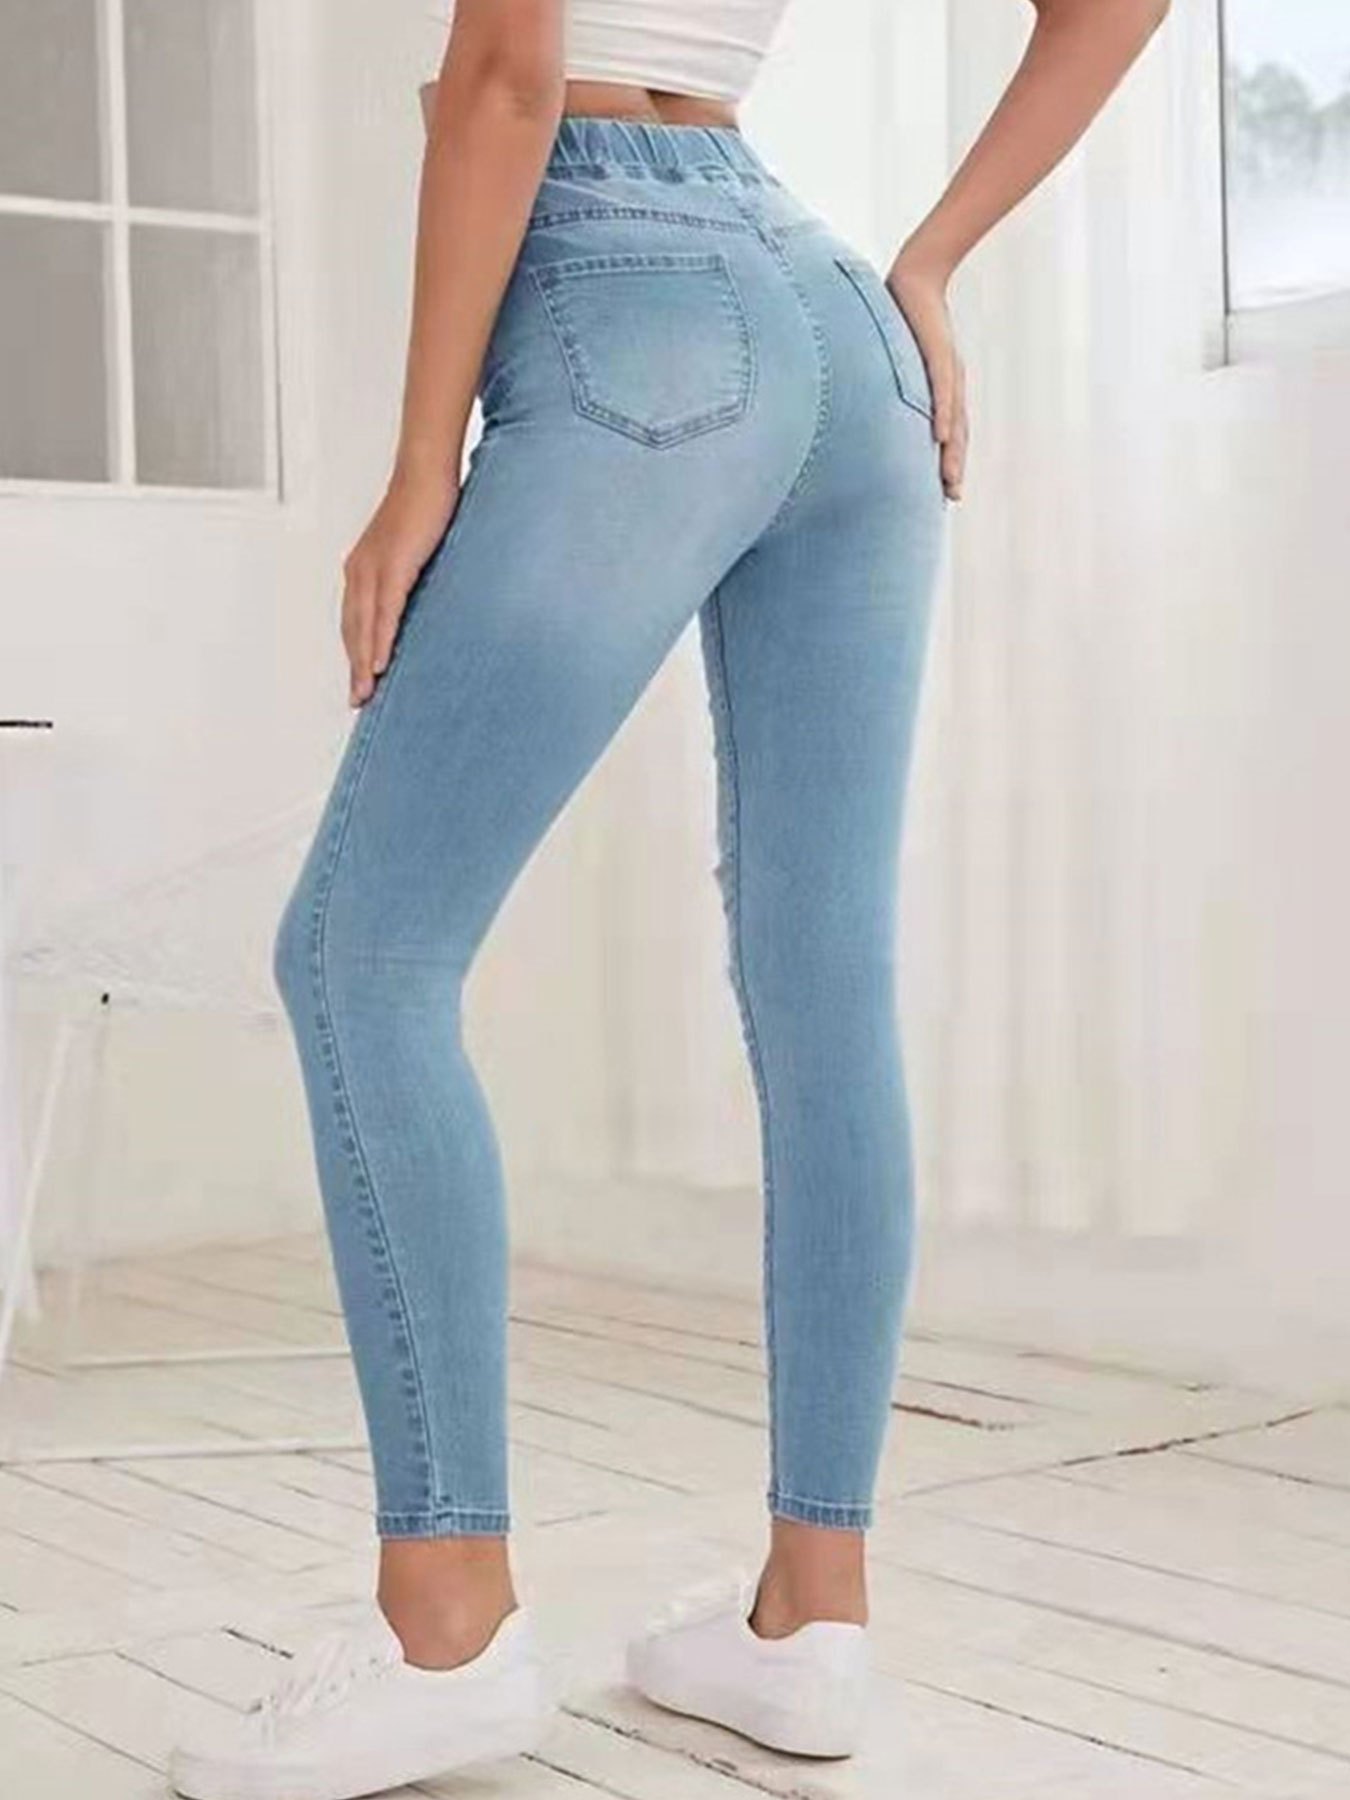 ZZYLHS Cintura alta Caderas Jeans ajustados Mujer y Estados Unidos Otoño e  Invierno Pies delgados Pantalones Nueve Pantalones elásticos (Color : Azul